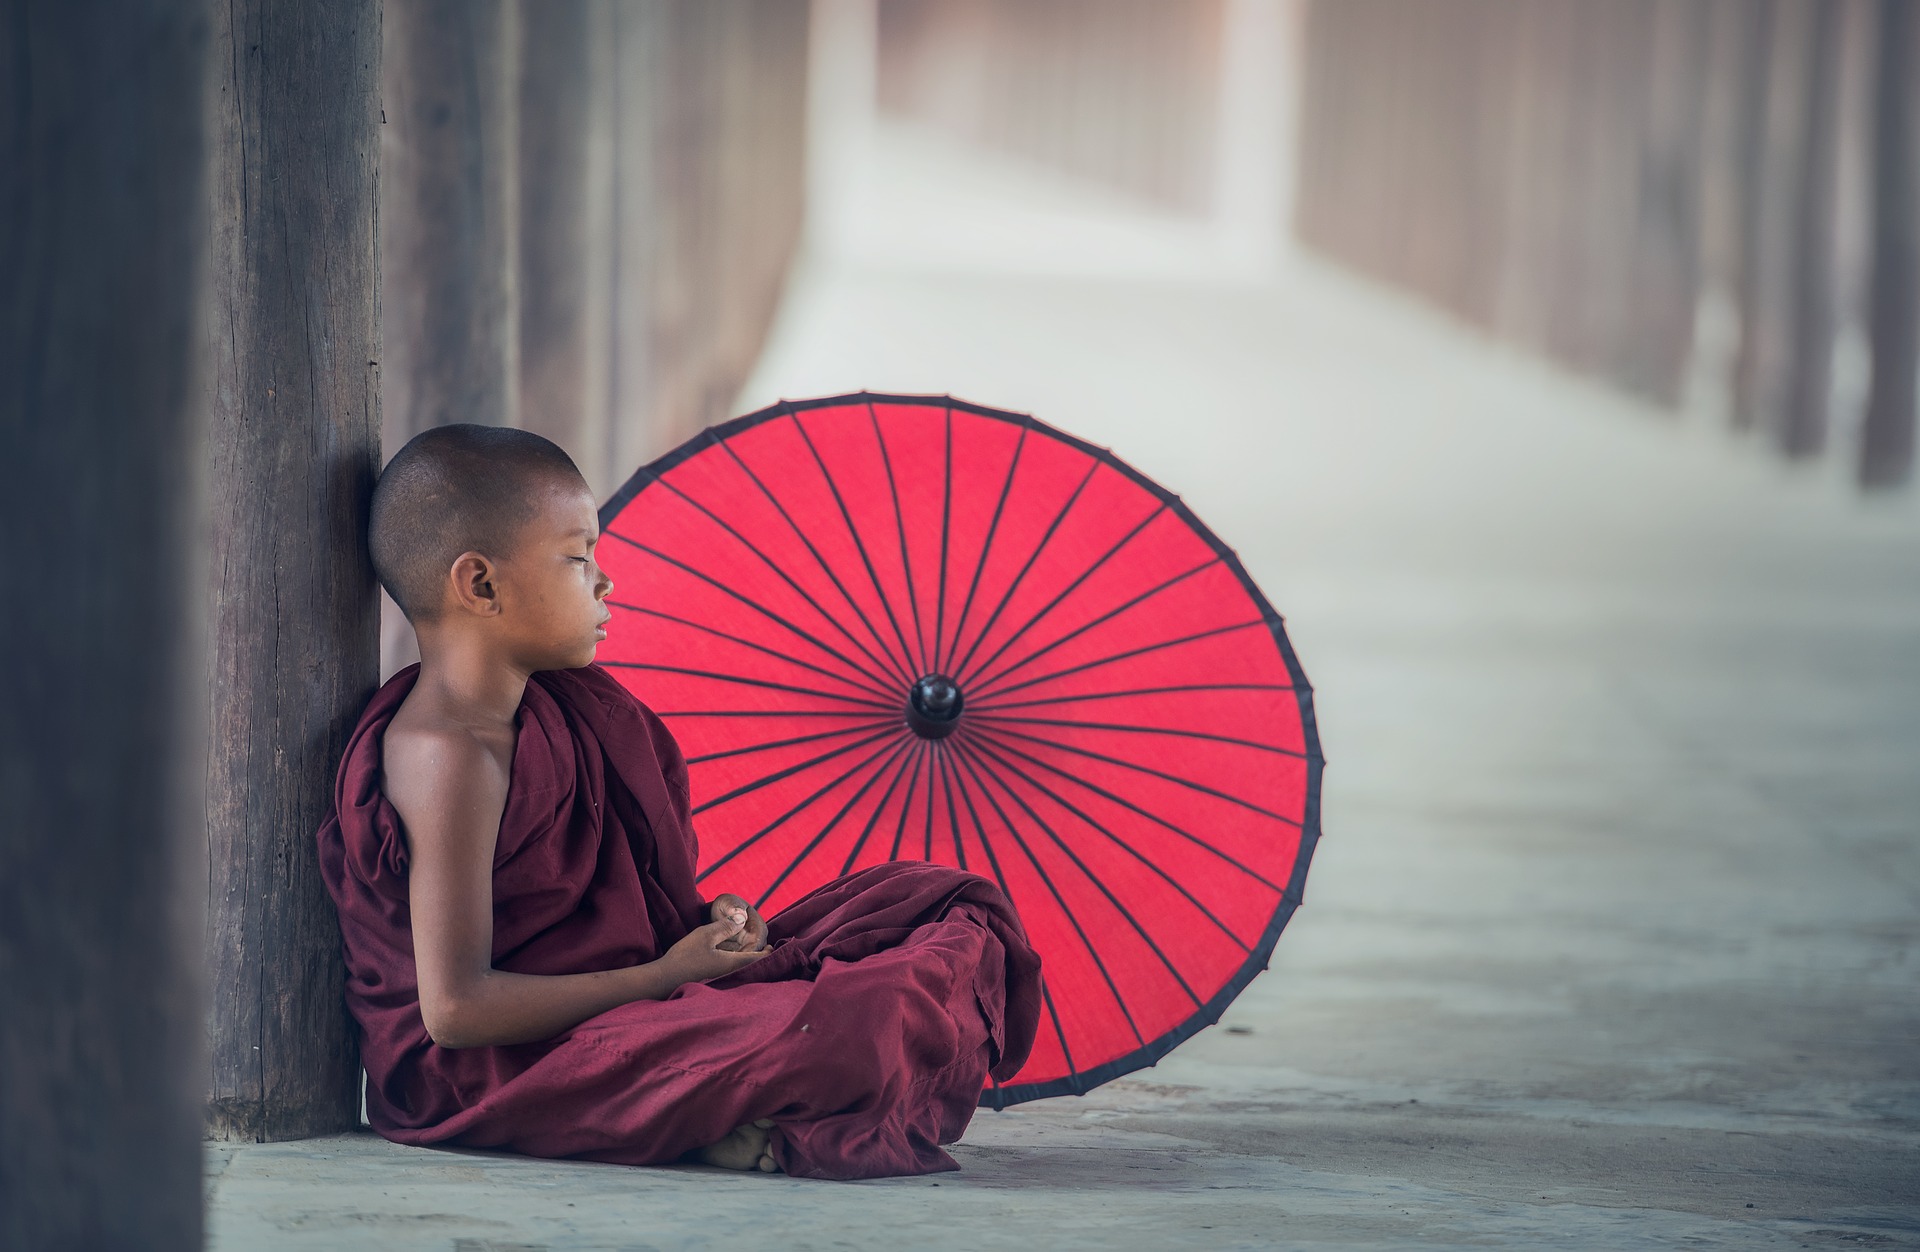 DOKUMENT Malý mních,vás prevedie reálnym životom detí žijúcich za múrmi kláštora